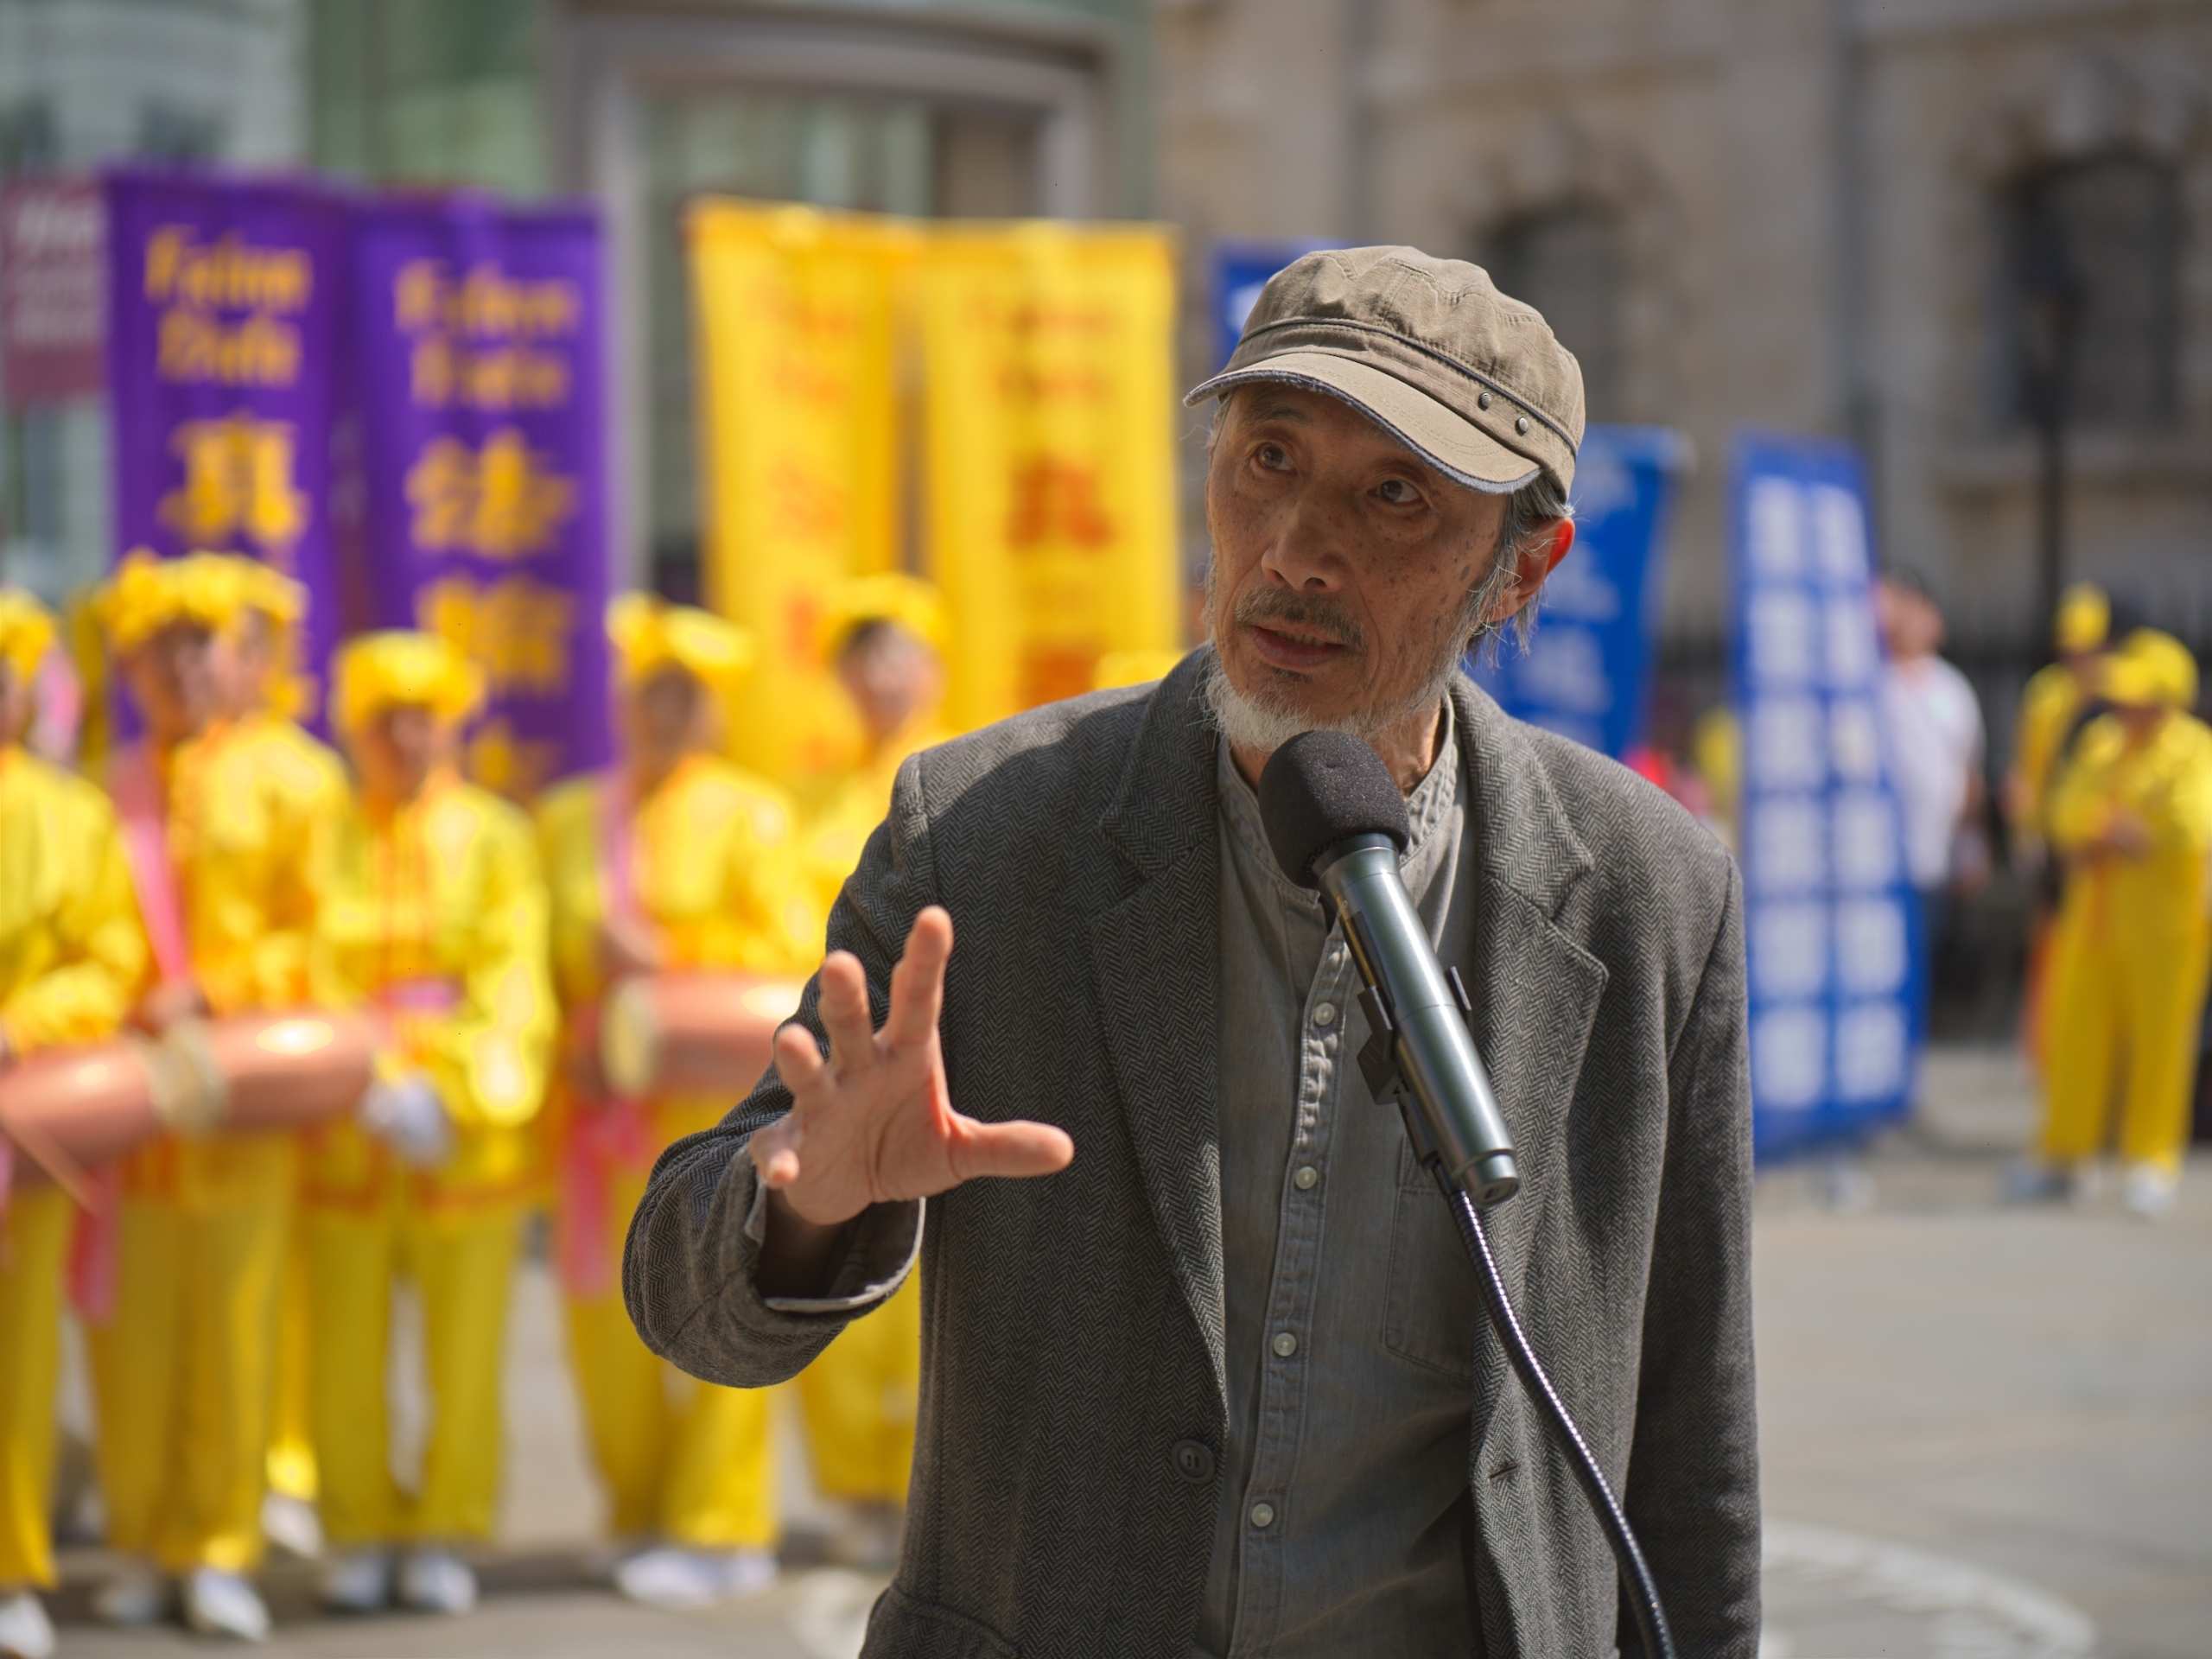 Ông Mã Kiến, một nhà văn Trung Quốc sống ở Anh, đã có bài diễn văn tại hoạt động kỷ niệm Ngày Pháp Luân Đại Pháp 13/05. (Ảnh: Yến Ninh/The Epoch Times)